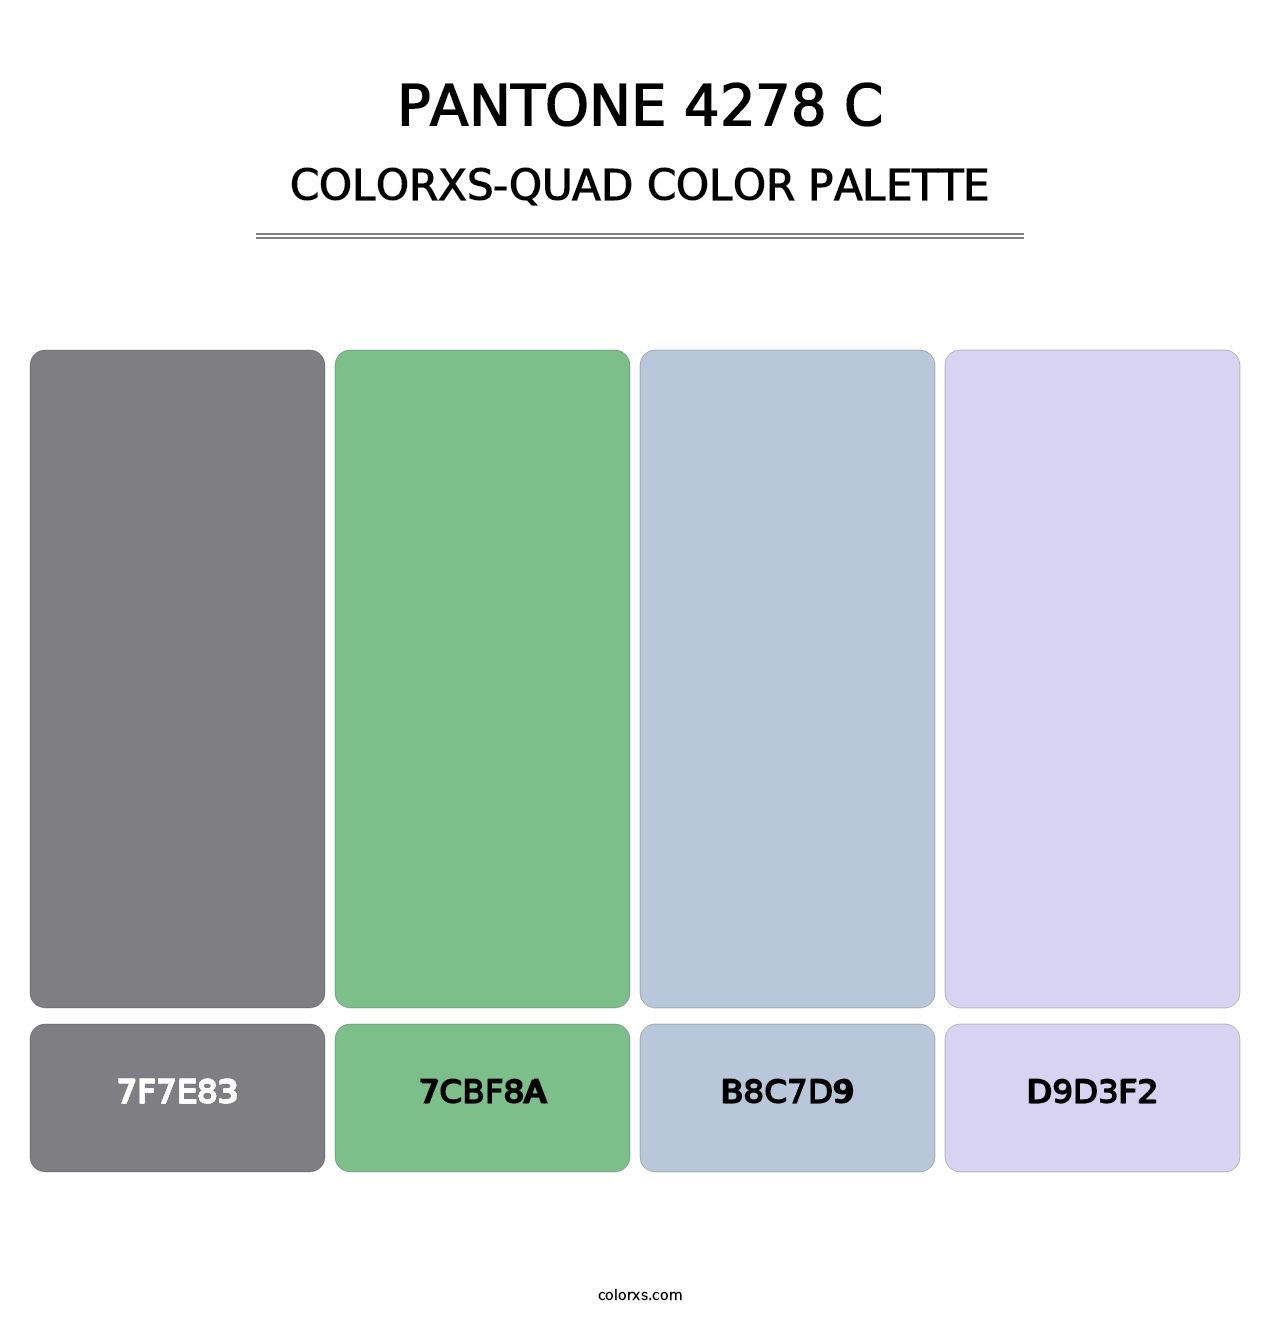 PANTONE 4278 C - Colorxs Quad Palette